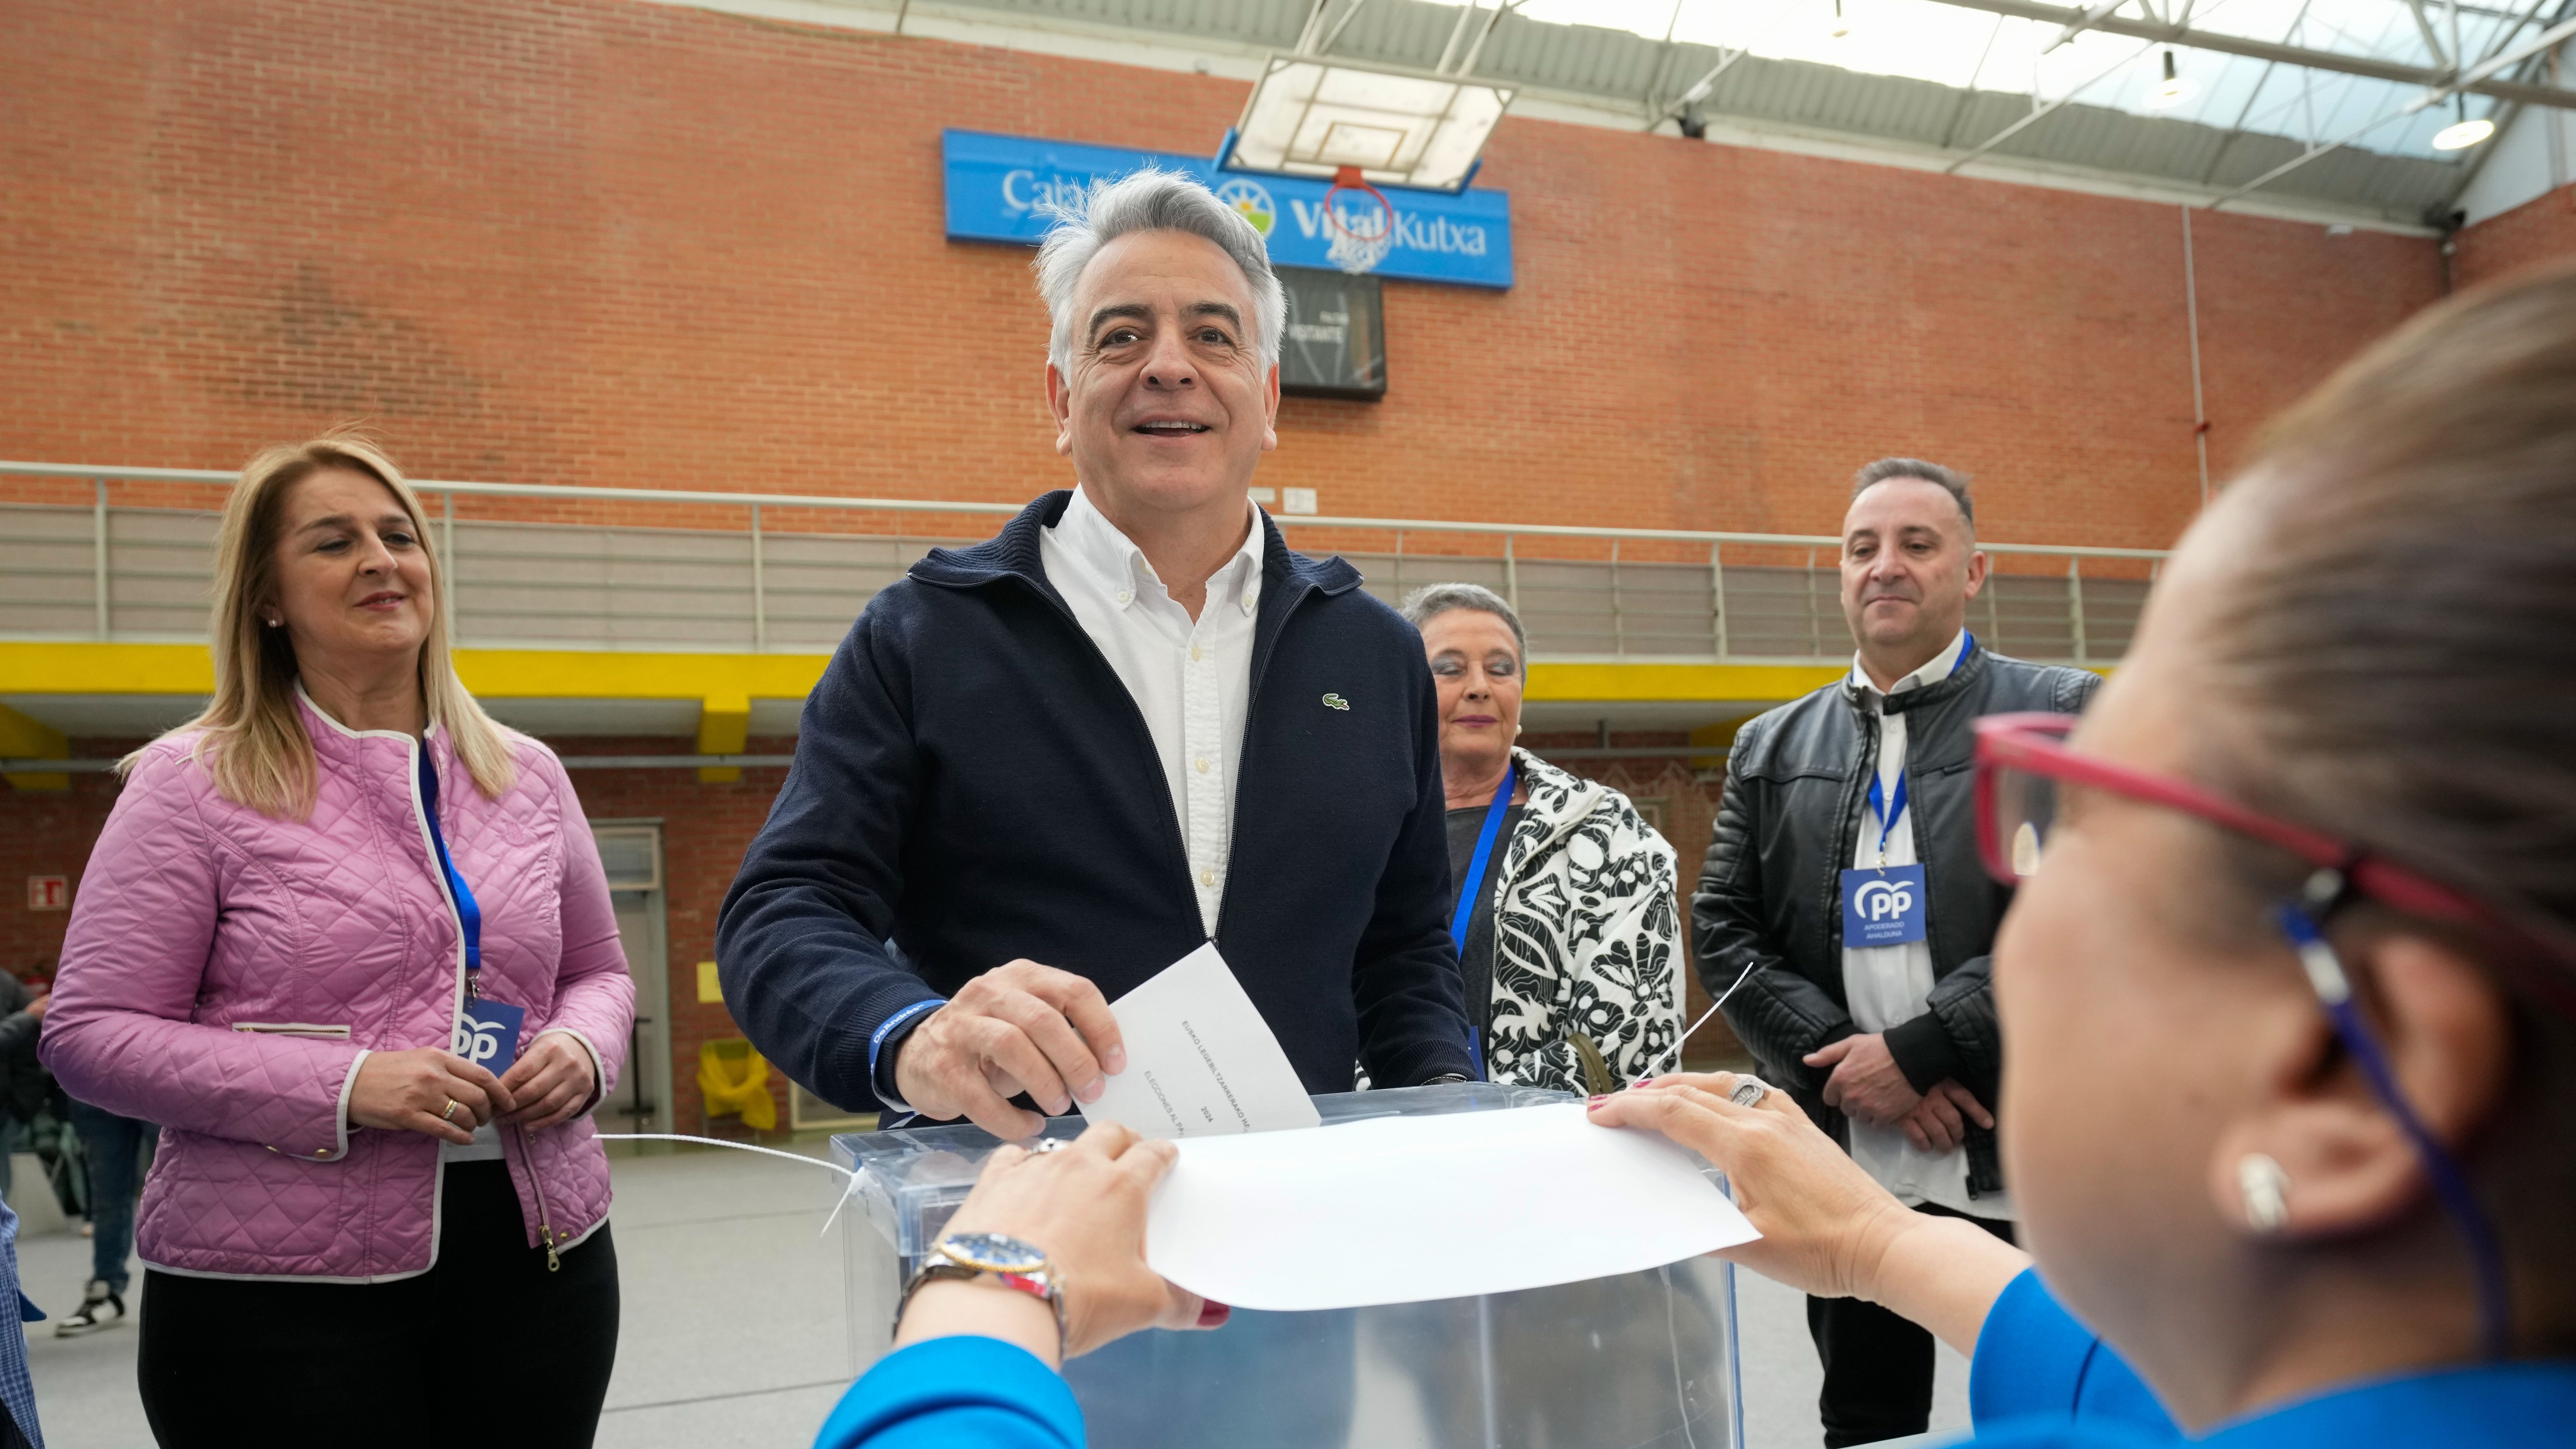 Javier de Andrés confía en lograr un gran respaldo para "ser decisivos" en el Parlamento vasco